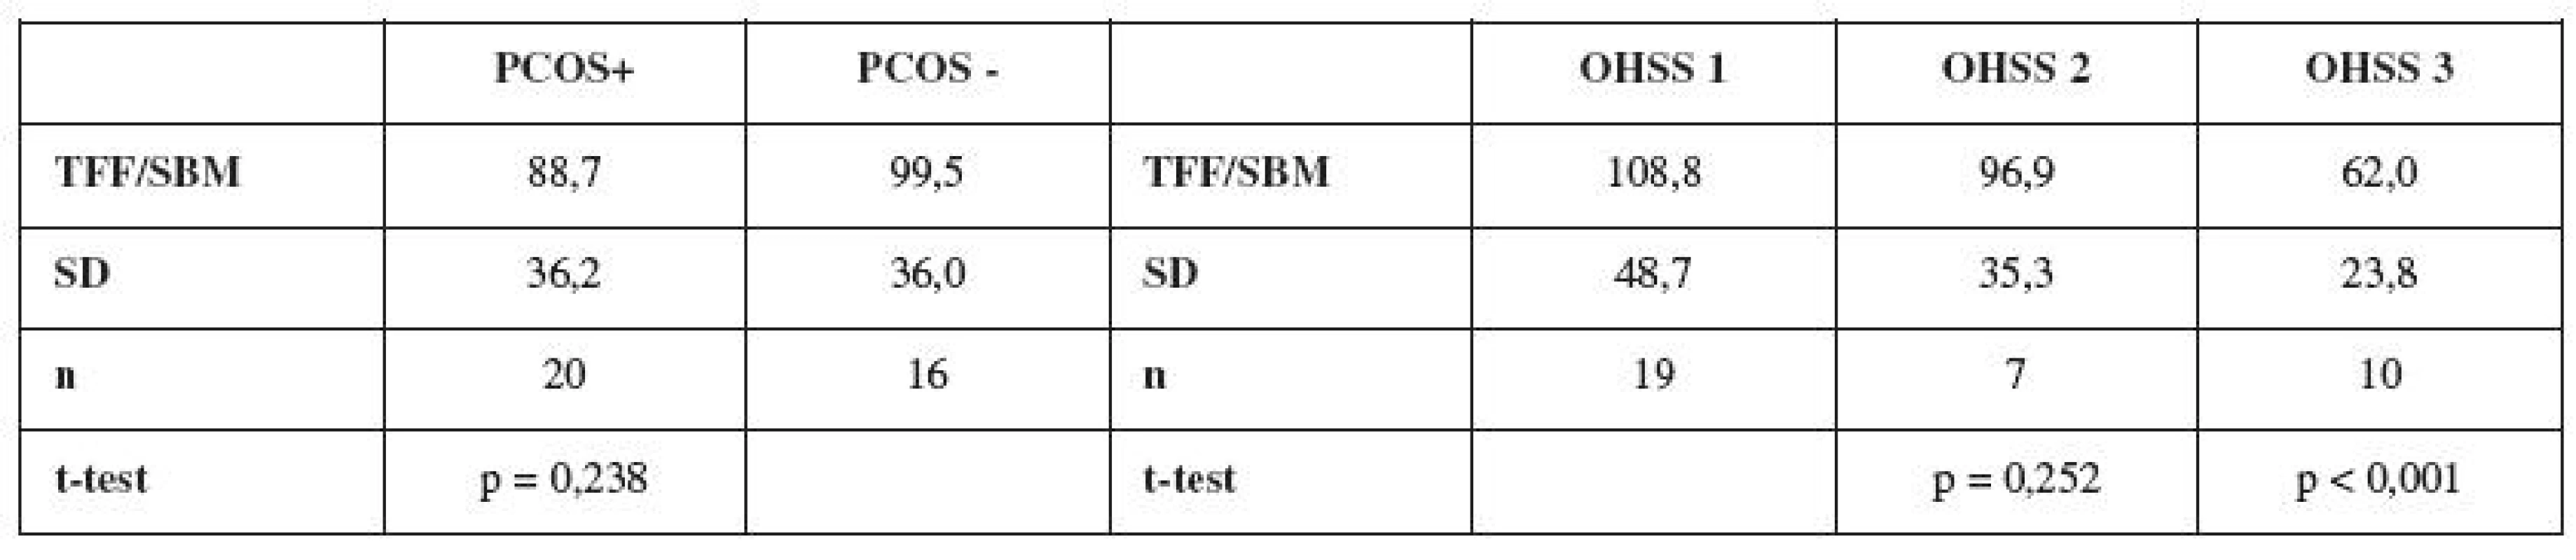 V tabulce je zhodnocena závislost hodnoty indexu TFF/SBM na výskytu PCOS a na stupni závažnosti OHSS. V případě OHSS je pomocí t-testu testována závislost mezi kontrolní skupinou OHSS 1 a skupinami OHSS 2 a OHSS 3. Hodnoceny byly pacientky s počtem rostoucich folikulů 18 a větším